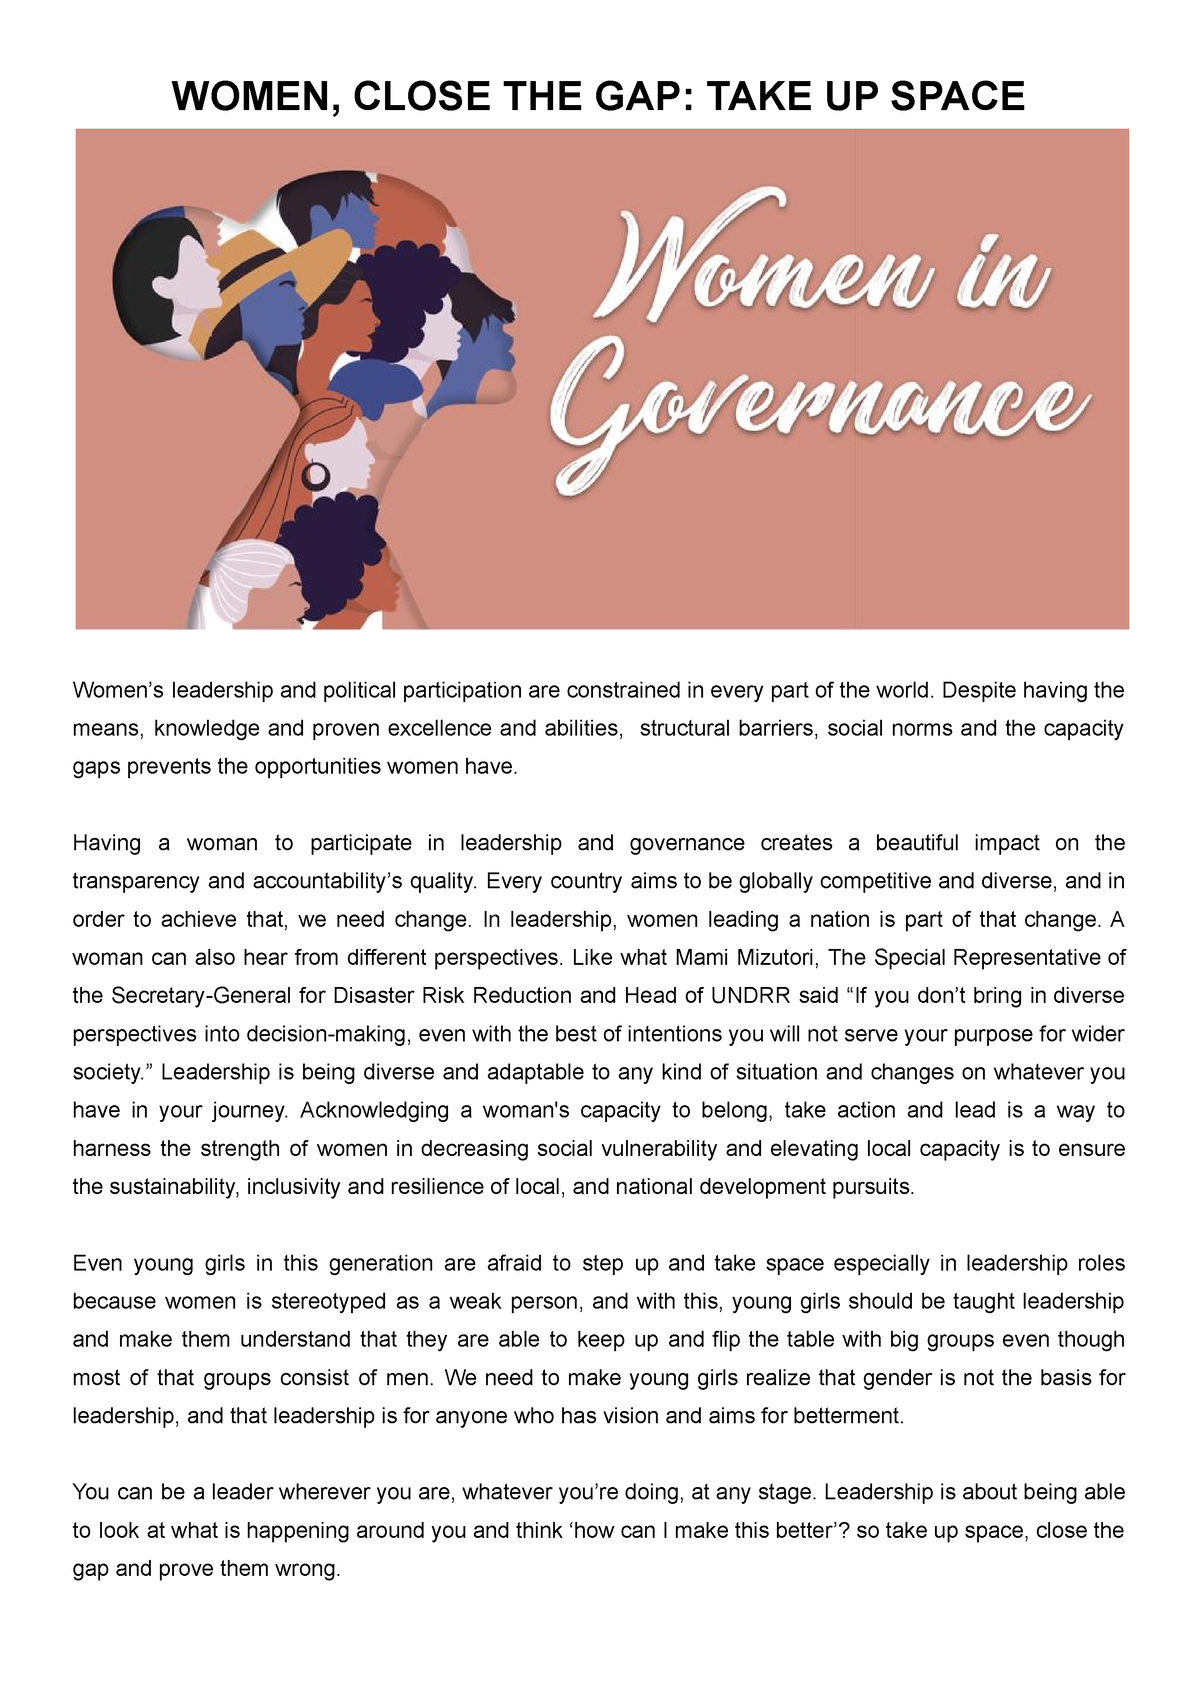 women's economic empowerment essay